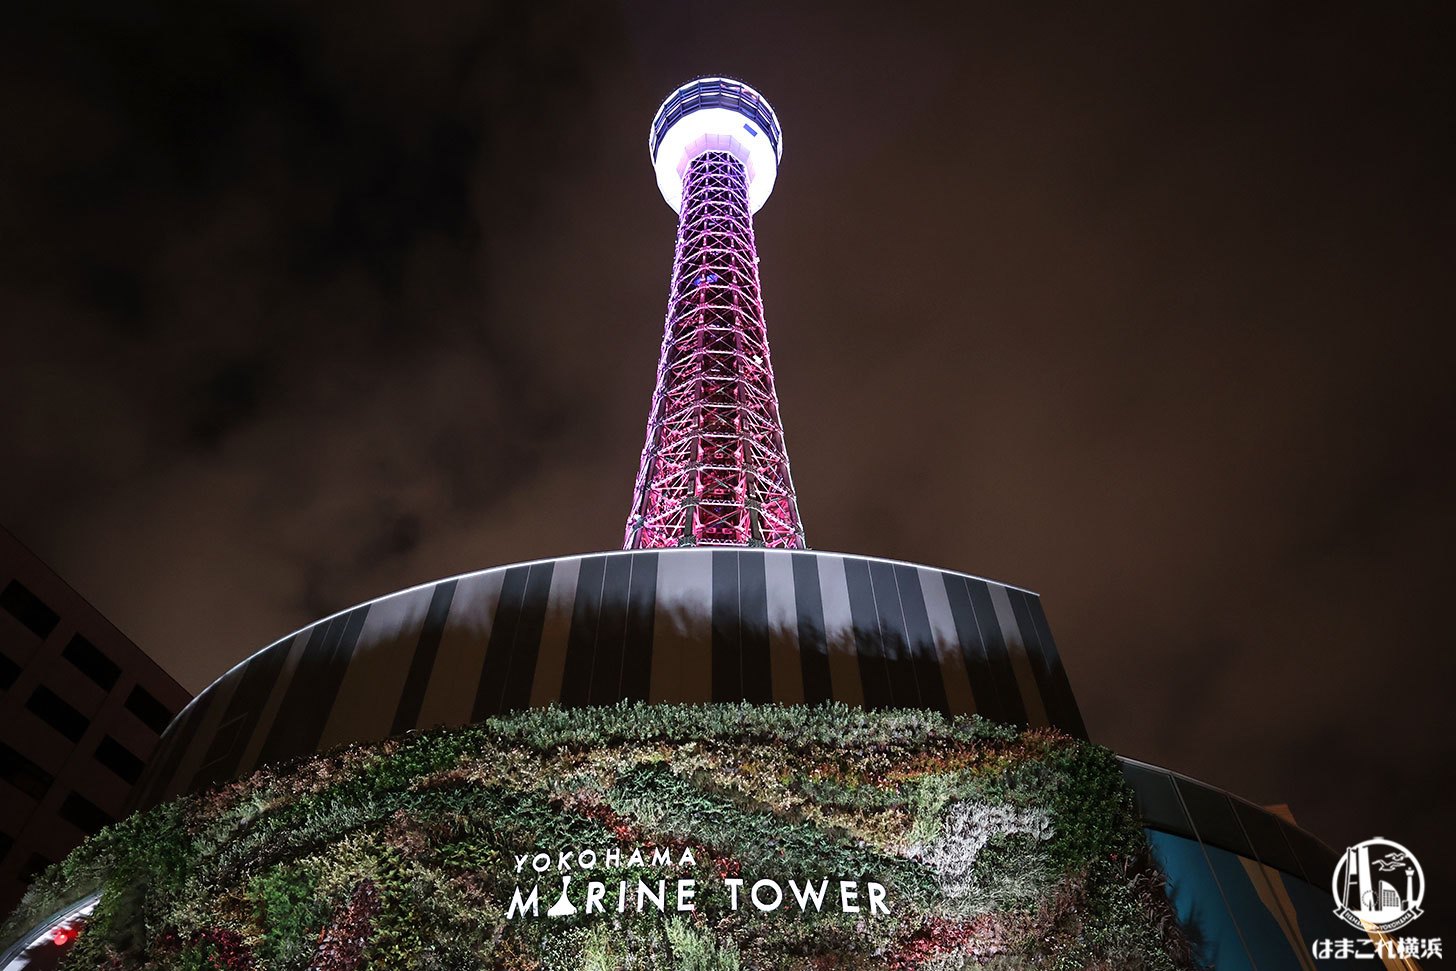 横浜マリンタワー展望台で夜景と光と映像の融合体験！横浜の新たな夜景を満喫